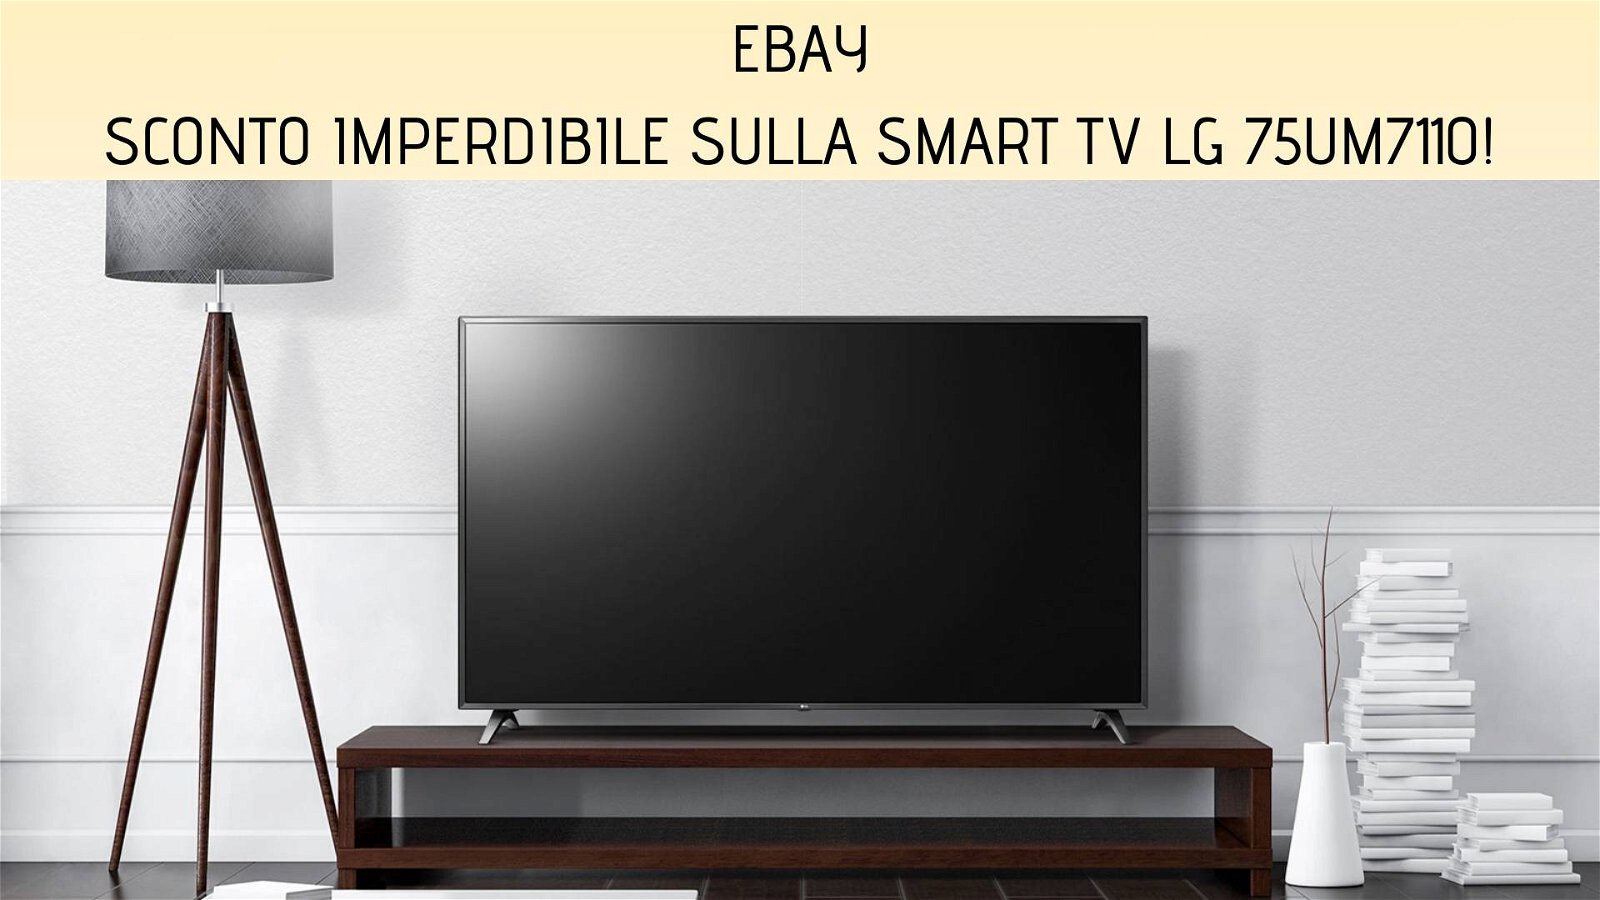 Immagine di eBay: offerta imperdibile per la smart TV LG 75UM7110 da 75"!